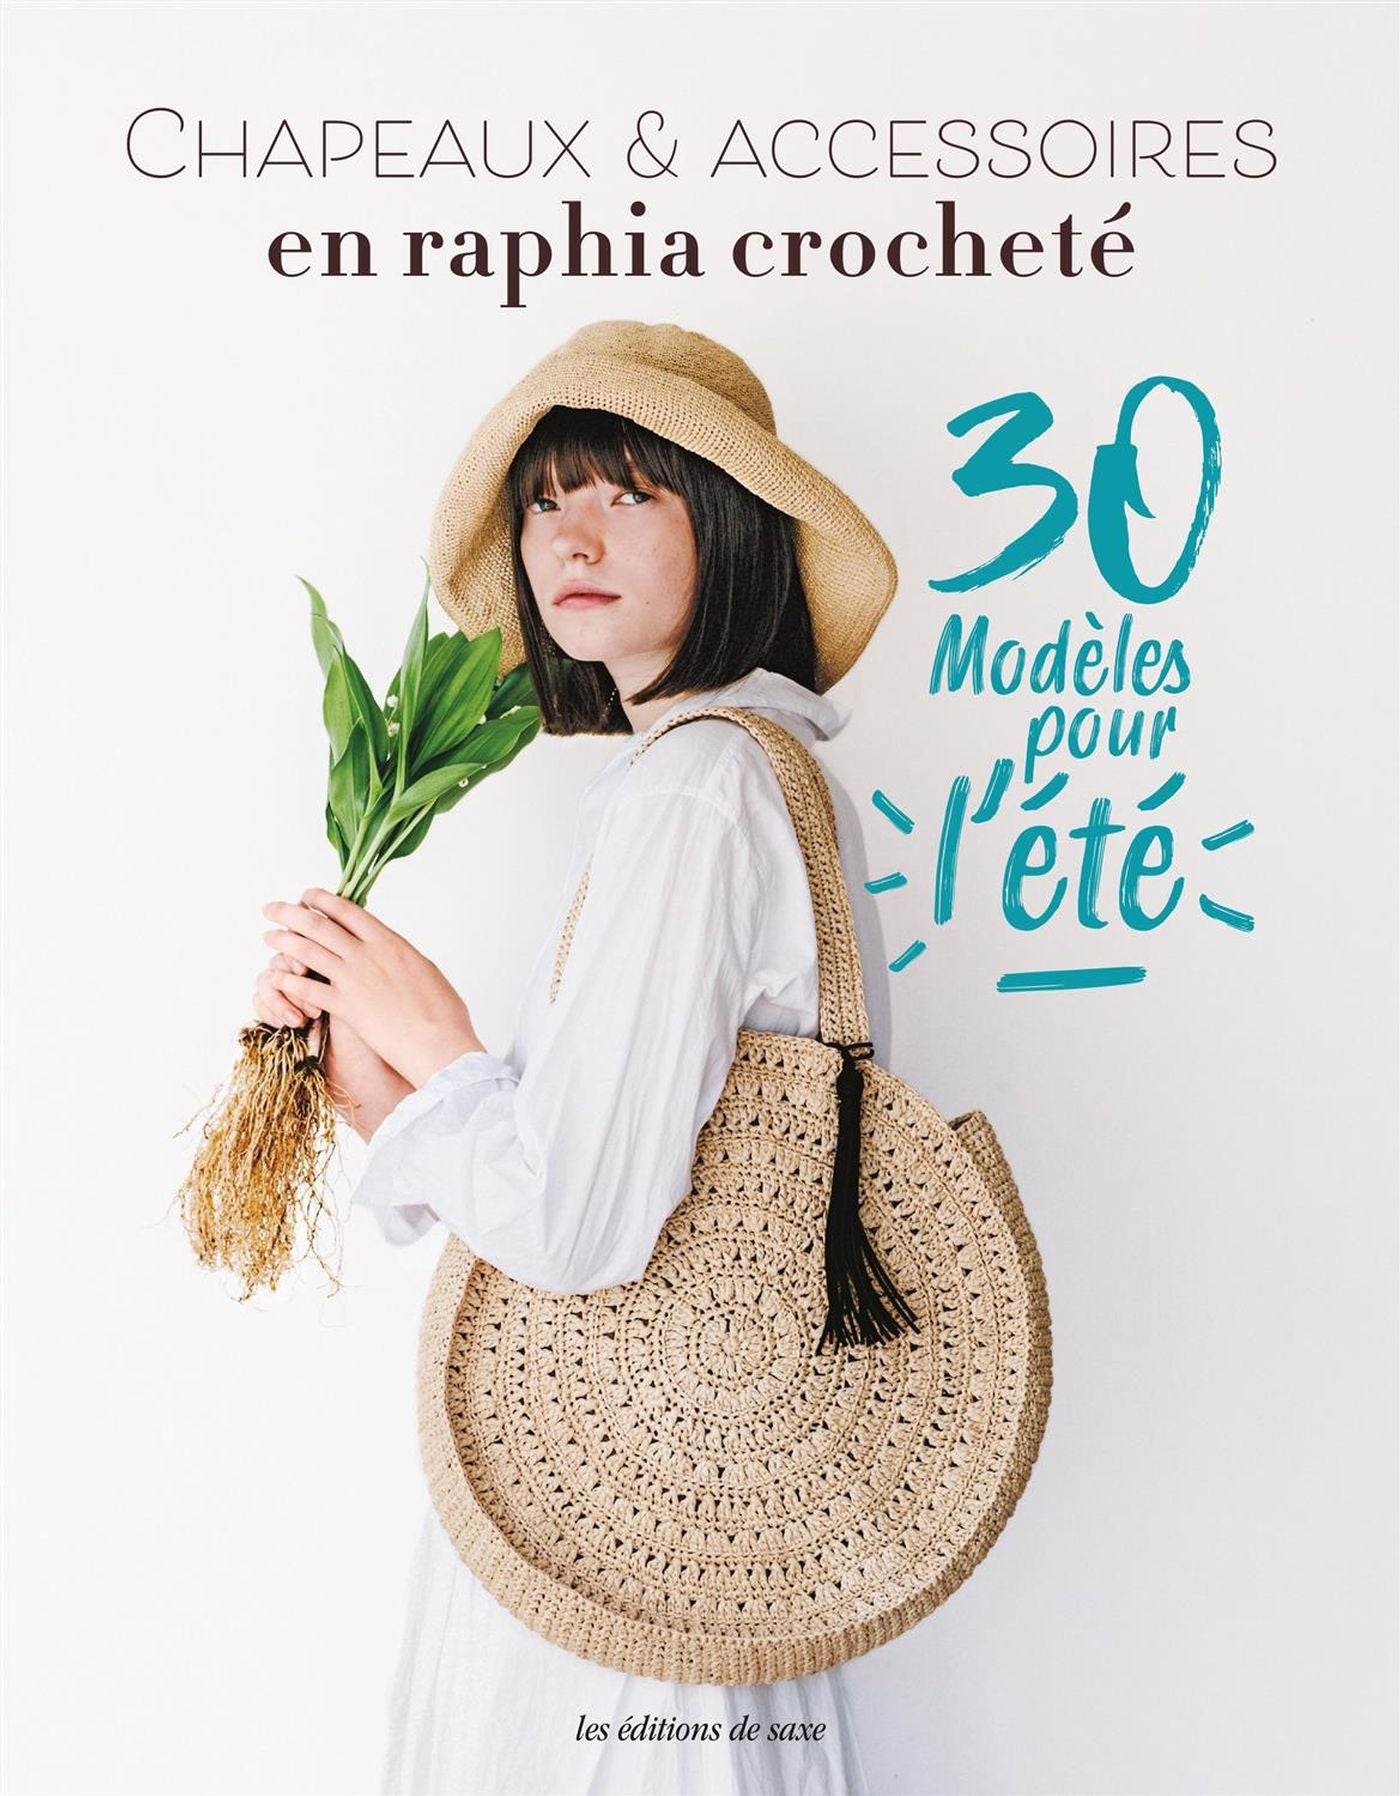 Chapeaux & accessoires en raphia crocheté - 30 modèles pour l'été